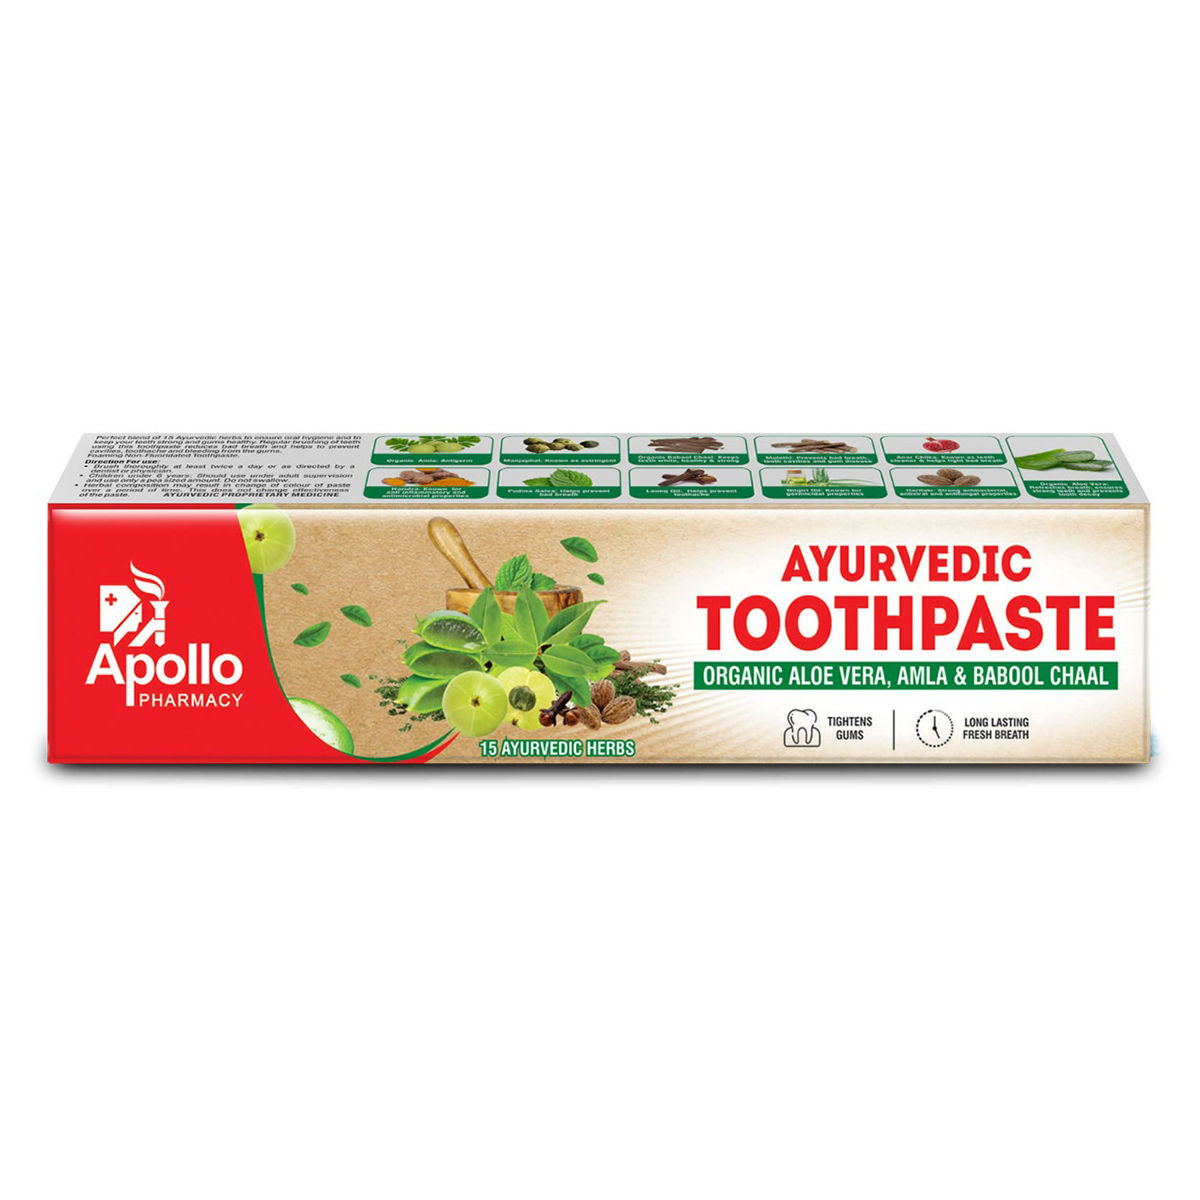 Buy Apollo Pharmacy Ayurvedic Toothpaste, 100 gm Online